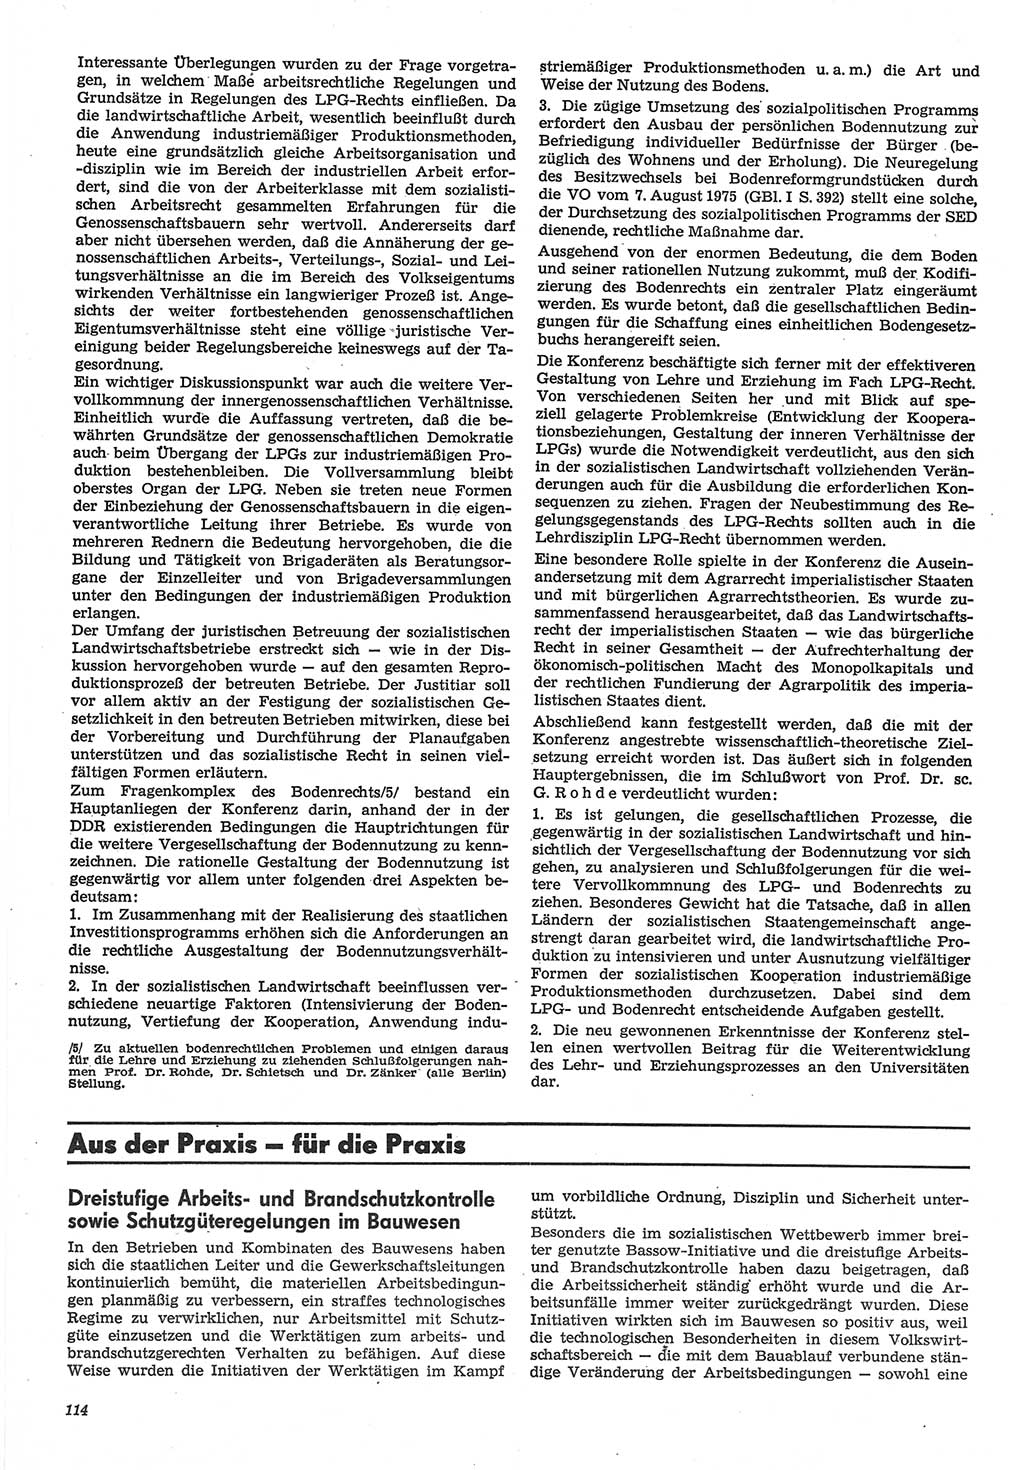 Neue Justiz (NJ), Zeitschrift für Recht und Rechtswissenschaft-Zeitschrift, sozialistisches Recht und Gesetzlichkeit, 31. Jahrgang 1977, Seite 114 (NJ DDR 1977, S. 114)